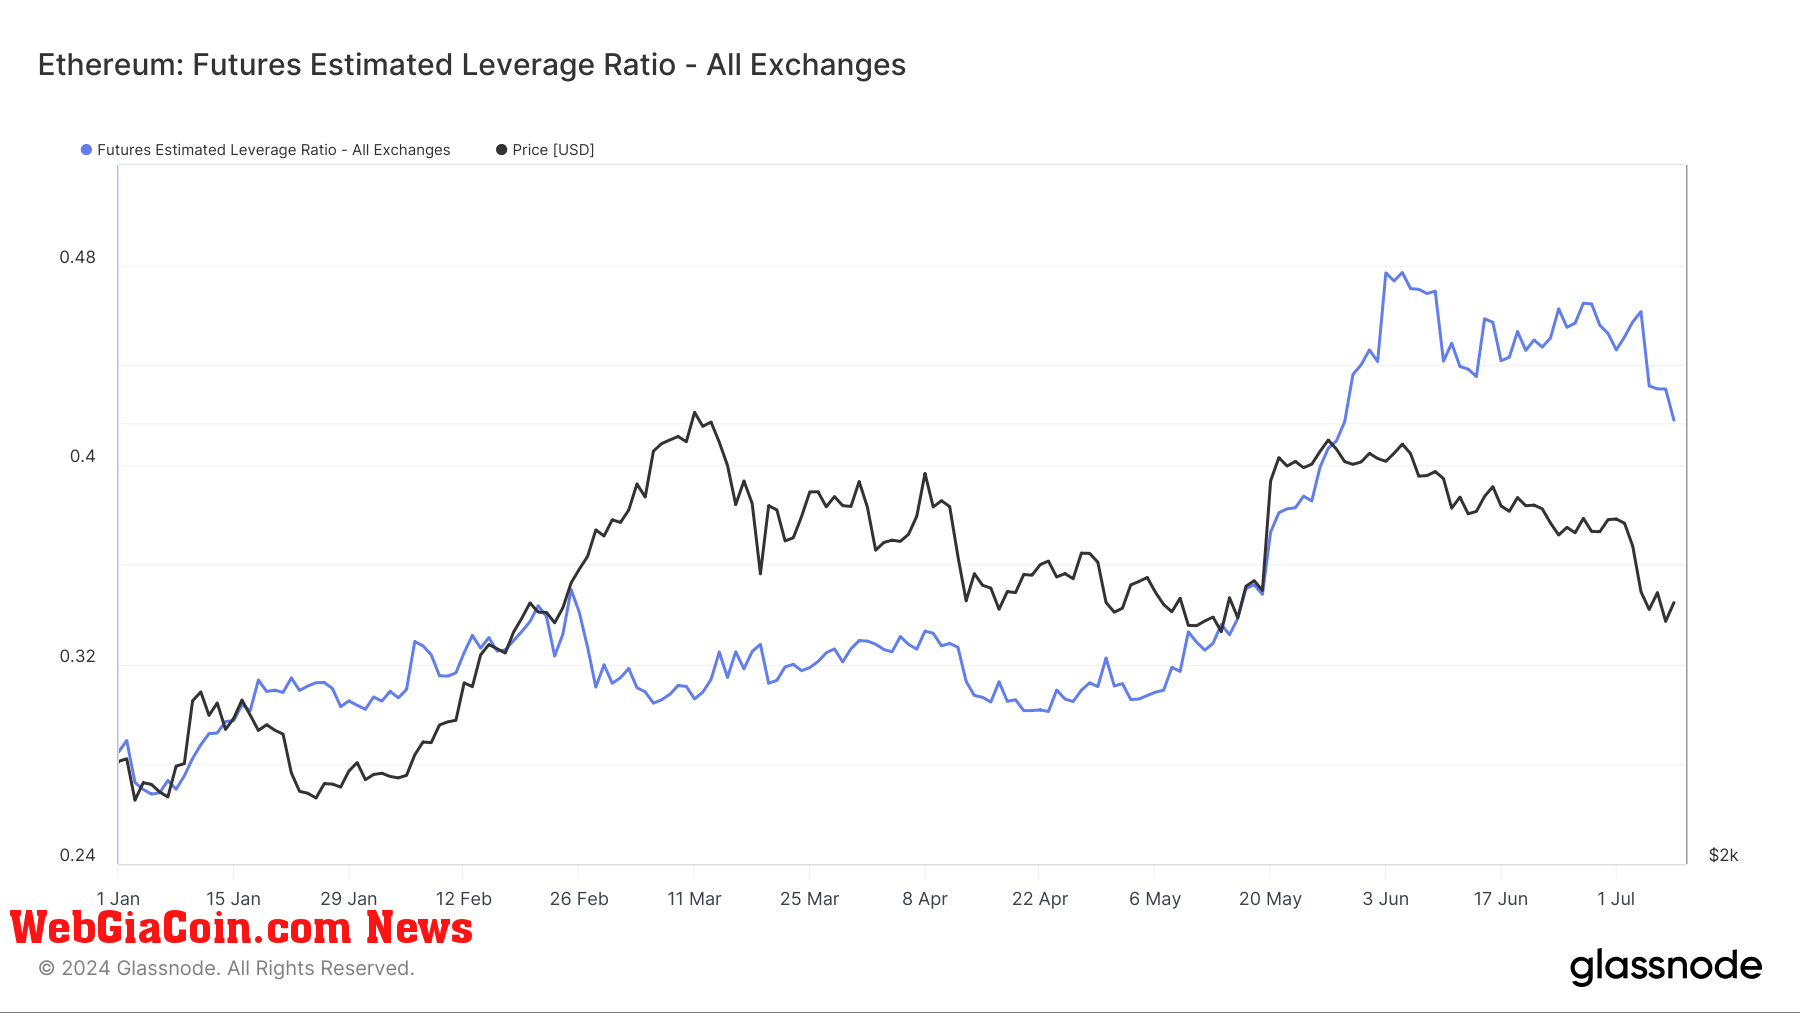 Ethereum: Futures Estimated Leverage Ratio: (Source: Glassnode)